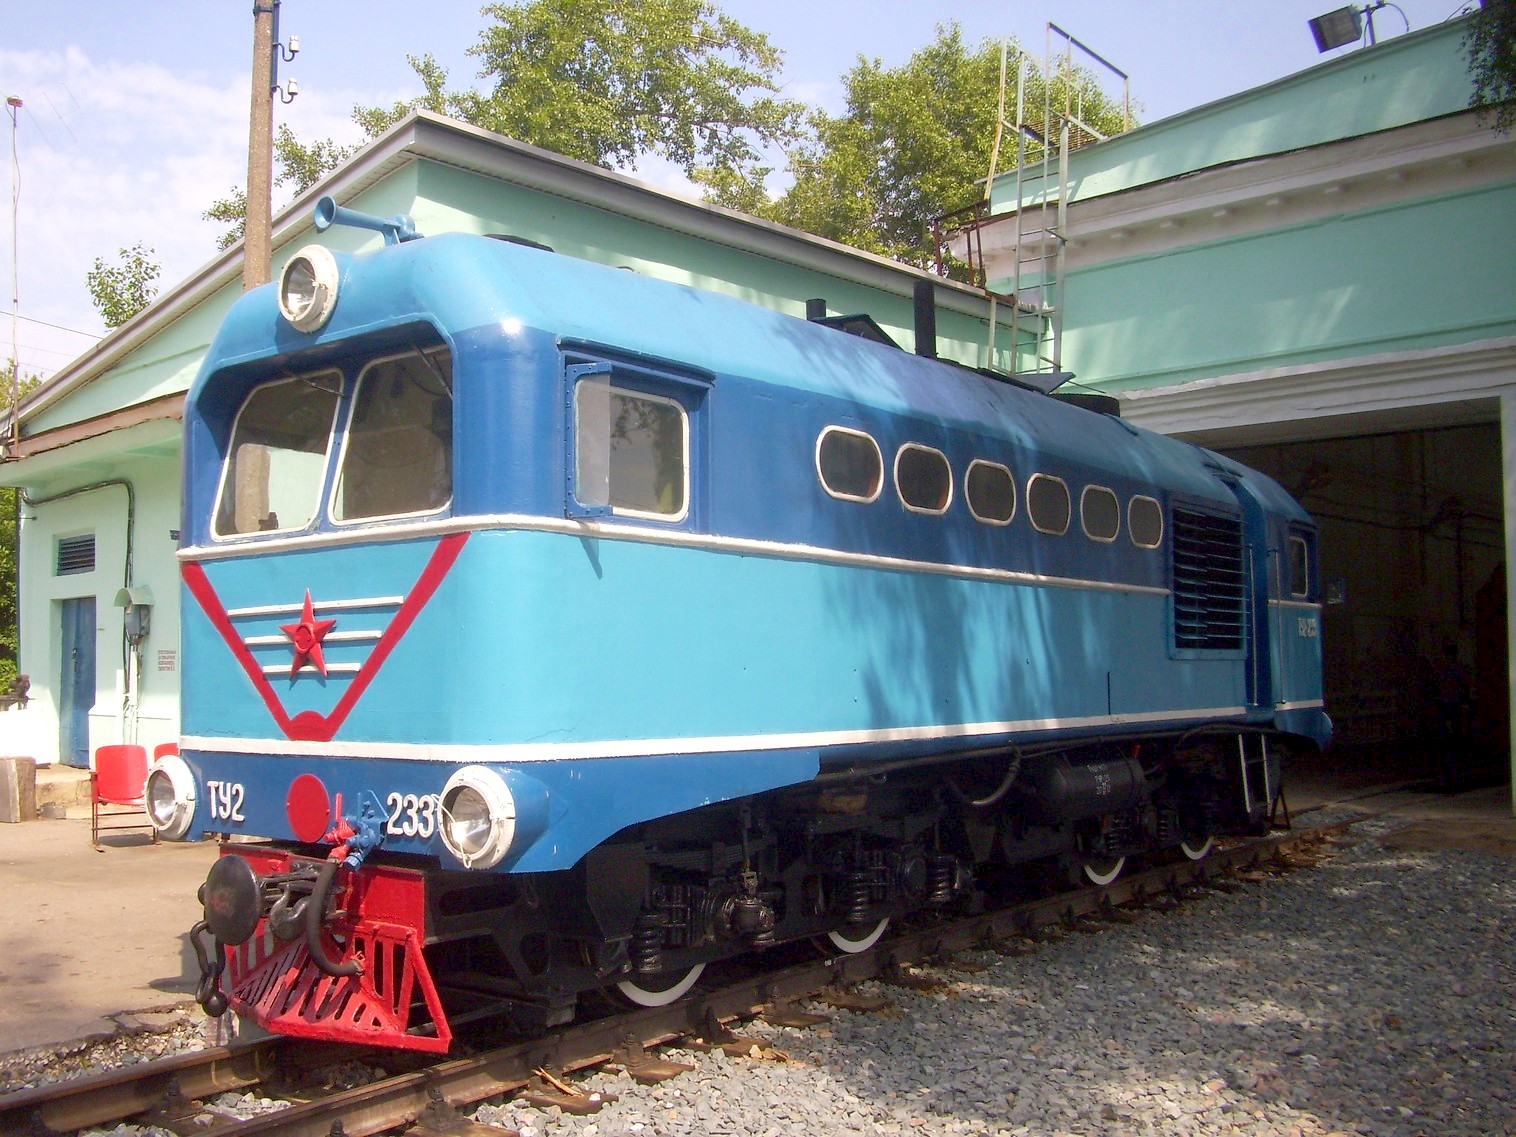 Малая Горьковская (Нижегородская) детская железная дорога — фотографии, сделанные в 2012 году (часть 2)